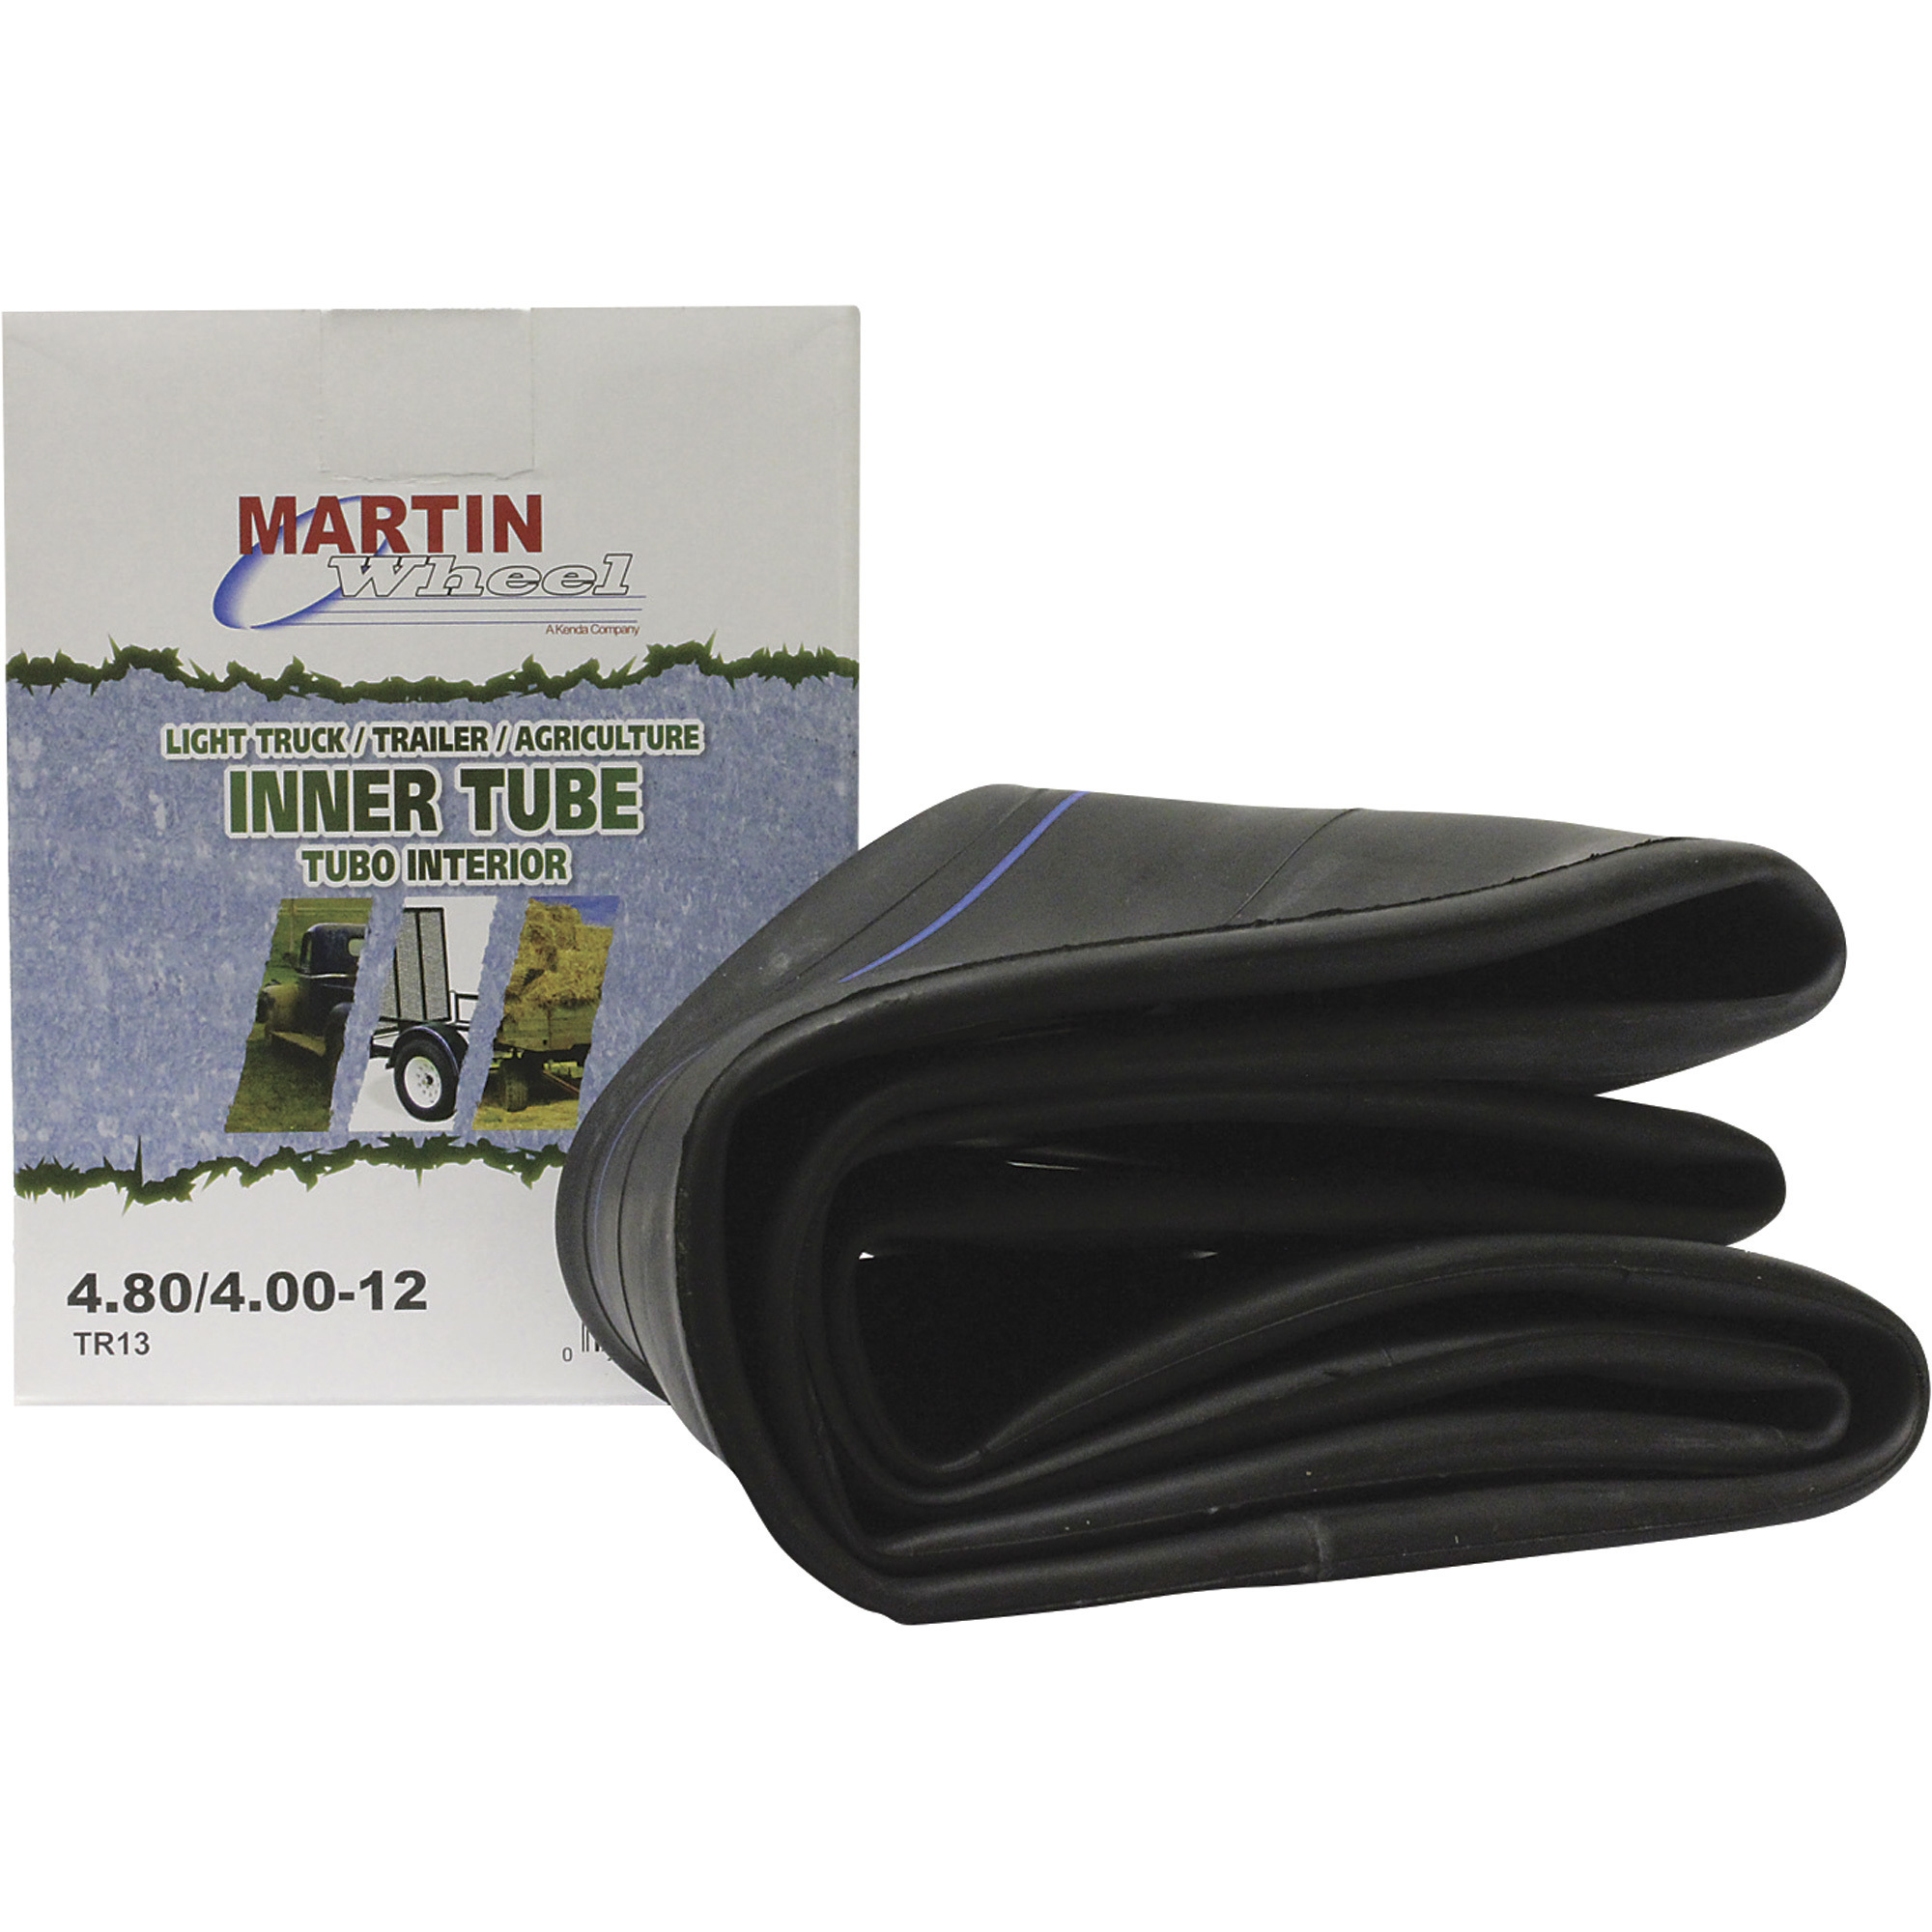 Martin Wheel Inner Tube with Straight Valve Stem â For 12Inch High Speed and Low Speed Applications, Model T412K